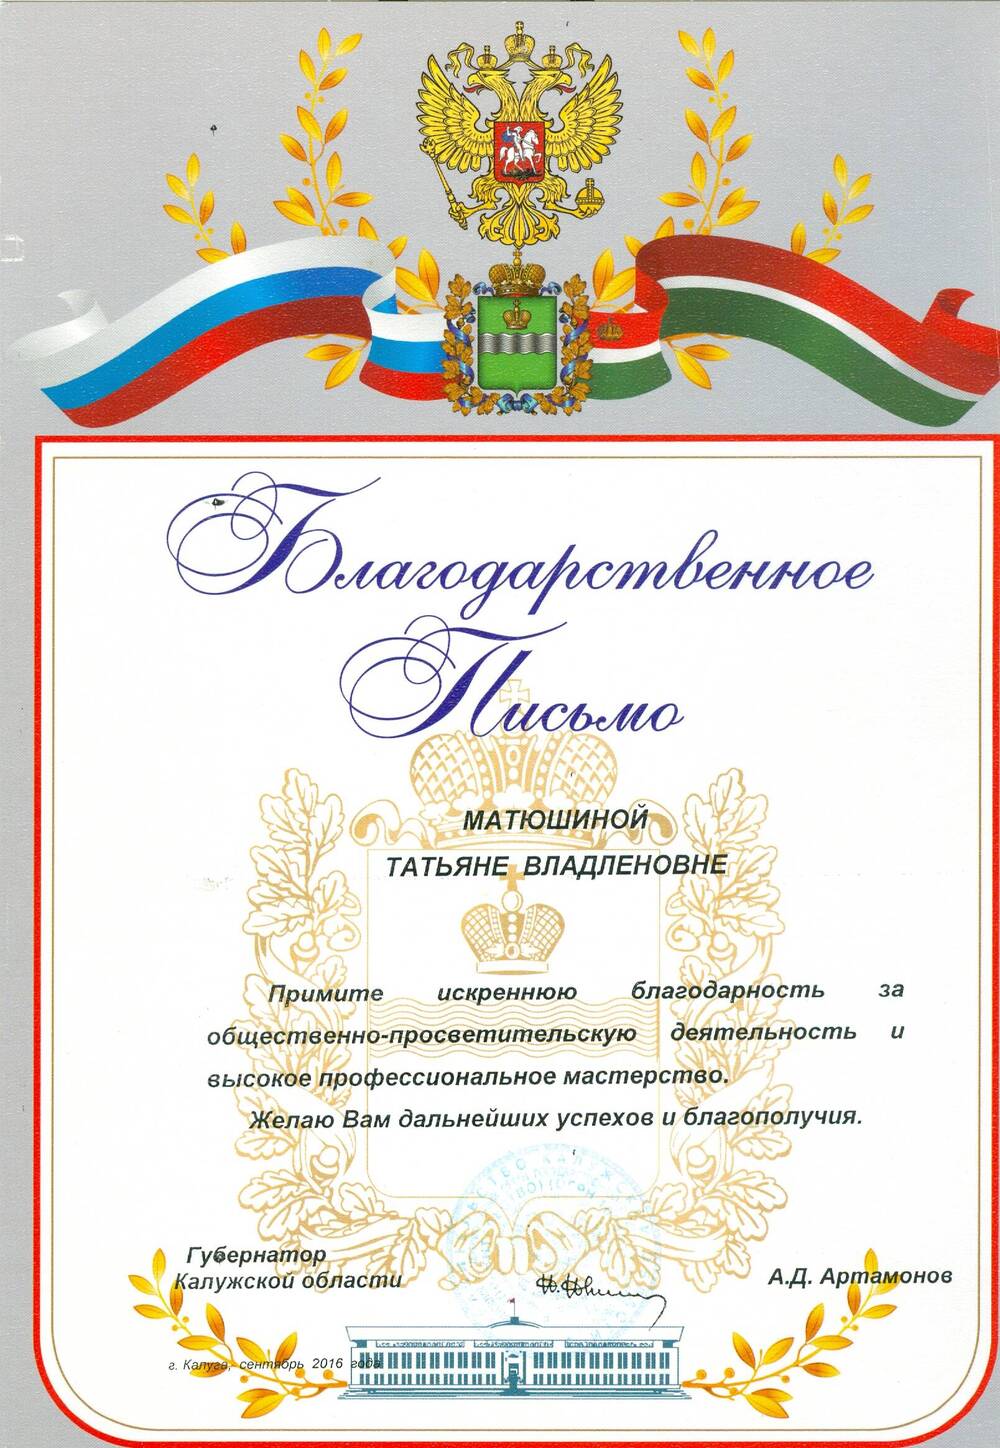 Благодарственное письмо Матюшиной Т. В. от губернатора Калужской области А. Д. Артамонова